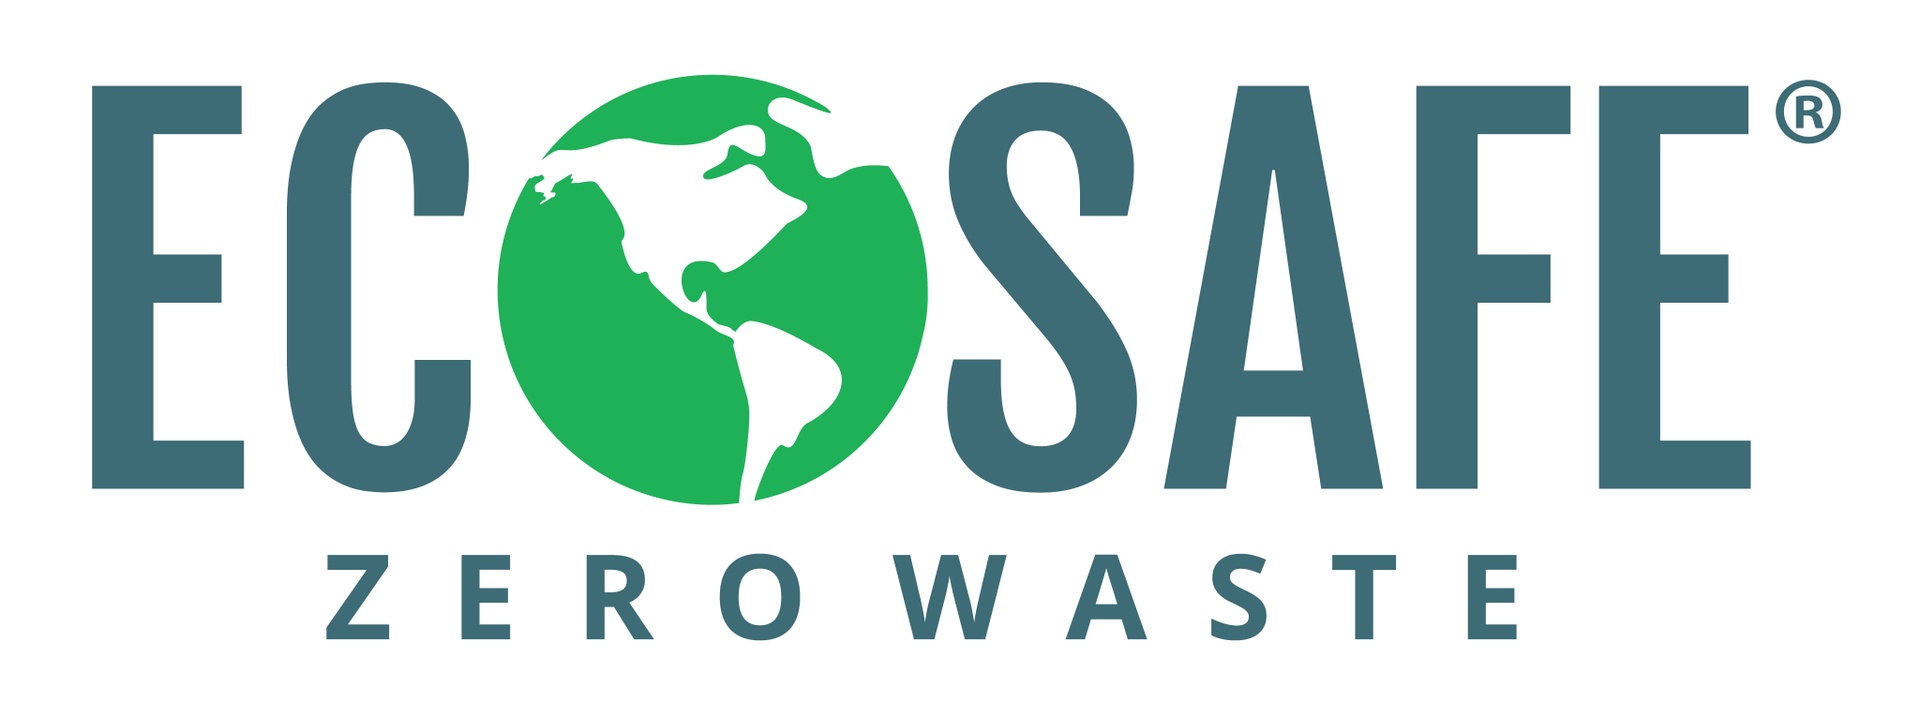 EcoSafe Zero Waste USA Inc.